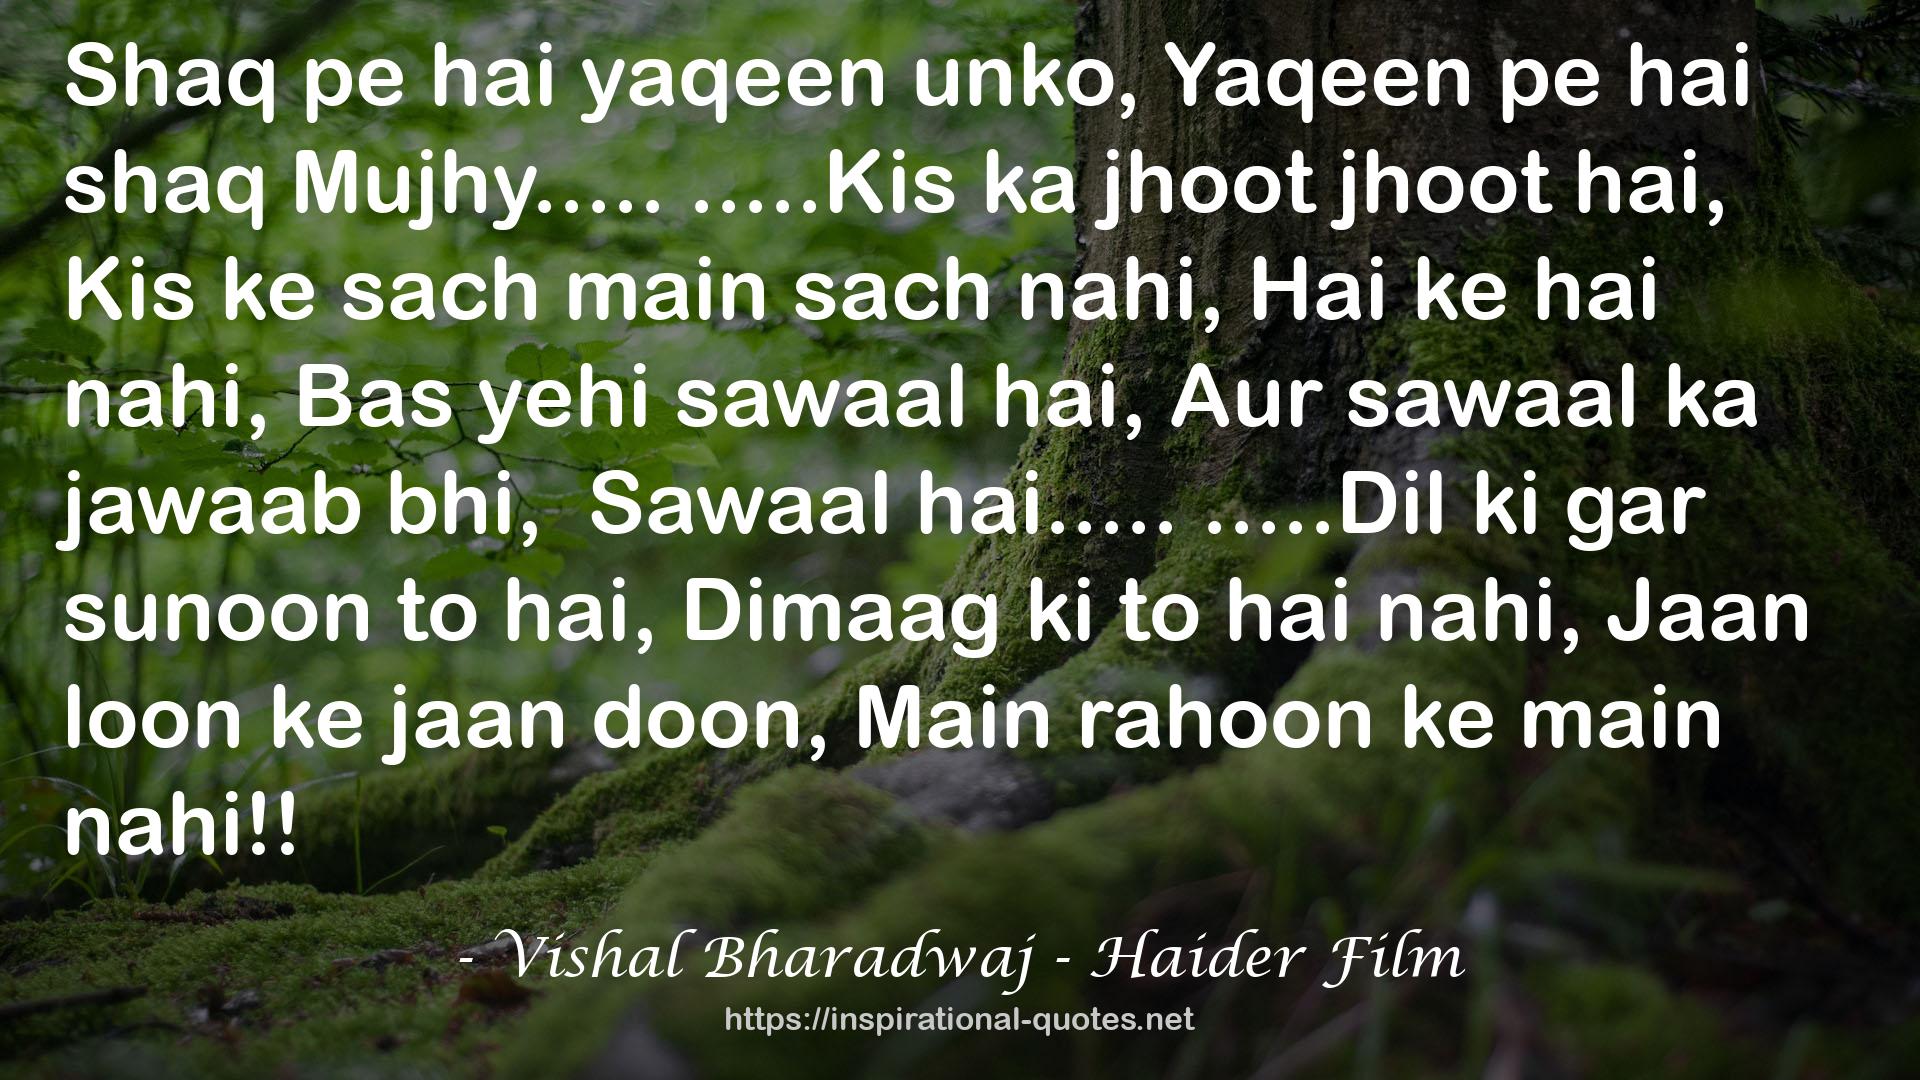 Vishal Bharadwaj - Haider Film QUOTES